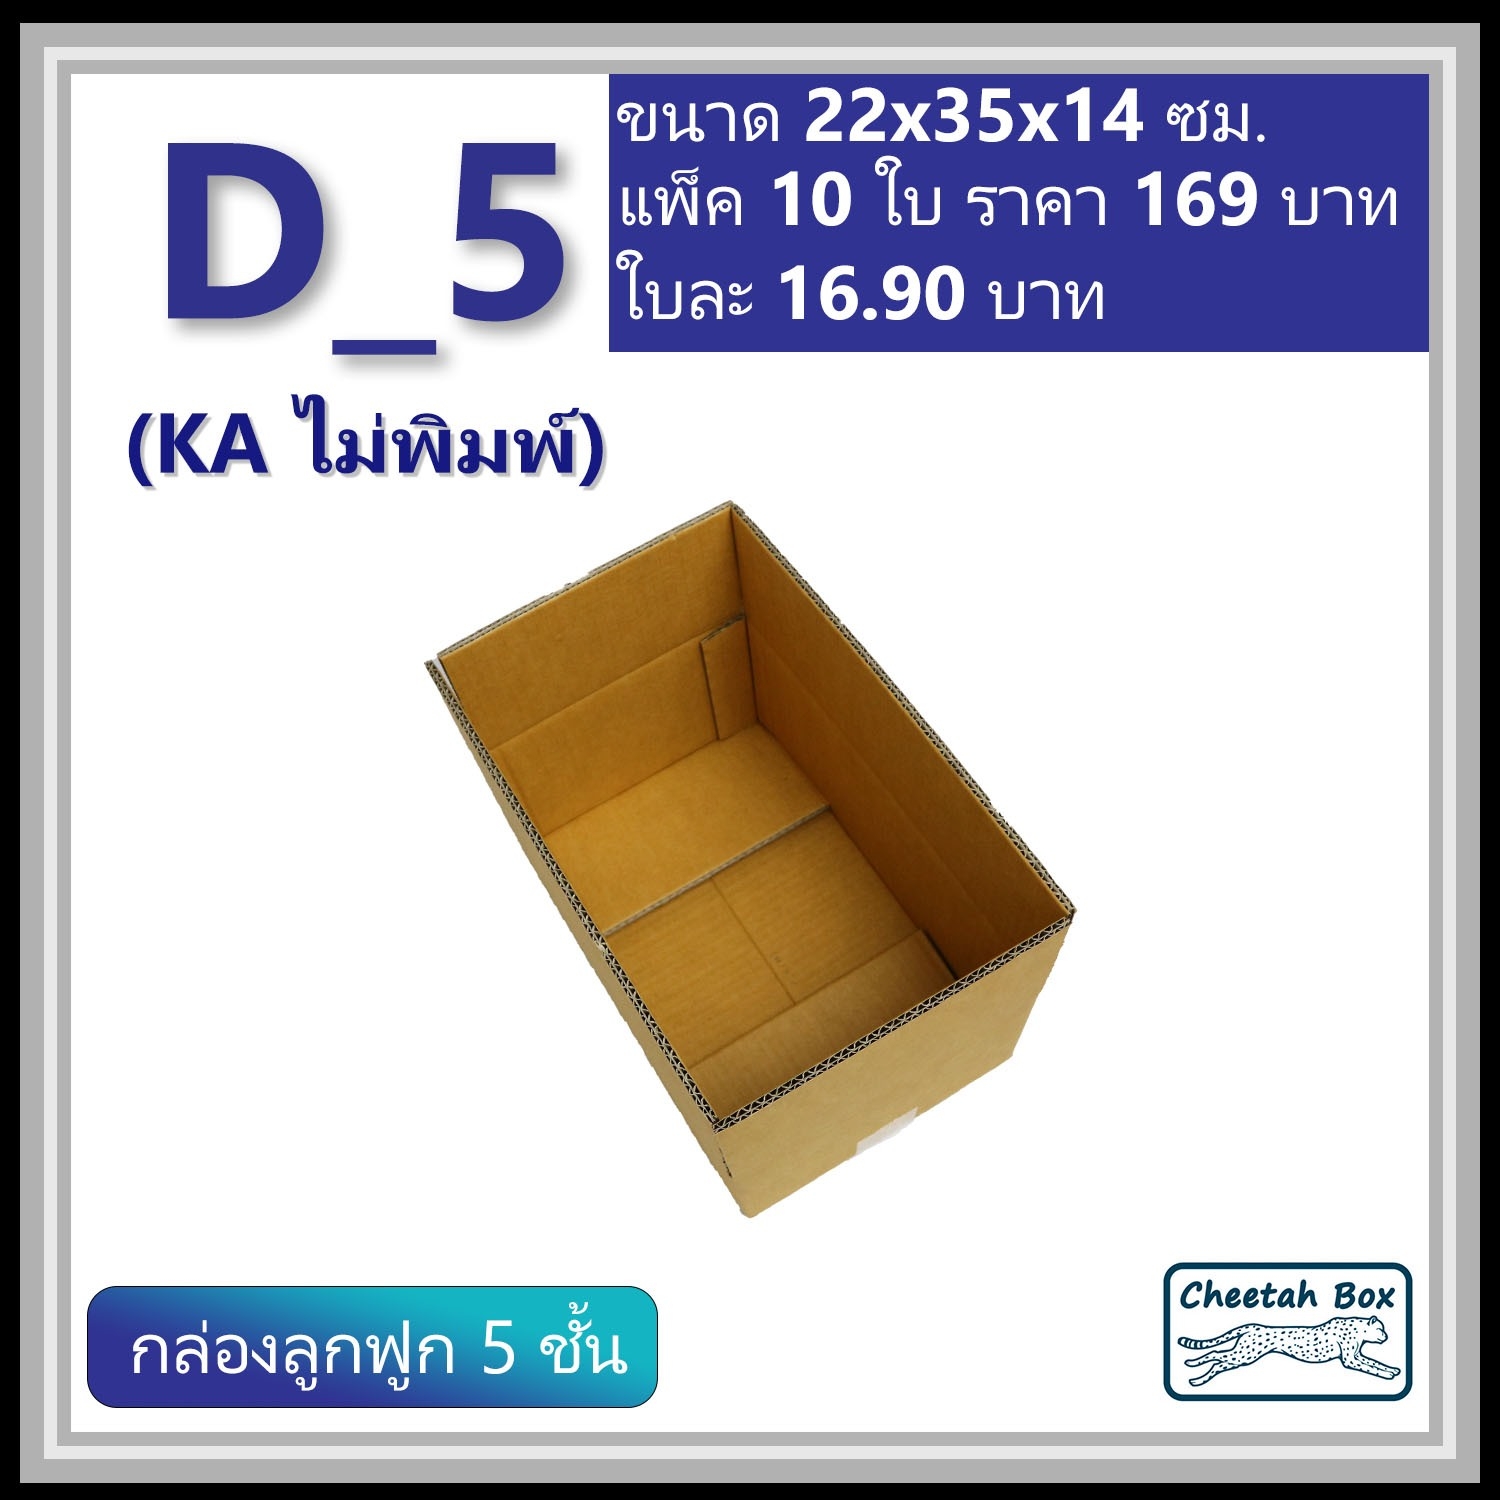 กล่องพัสดุ 5 ชั้น D_5 (KA125) ไม่พิมพ์ ลูกฟูก 5 ชั้น (Post Box)  ขนาด 22W x 35L x 14H cm.